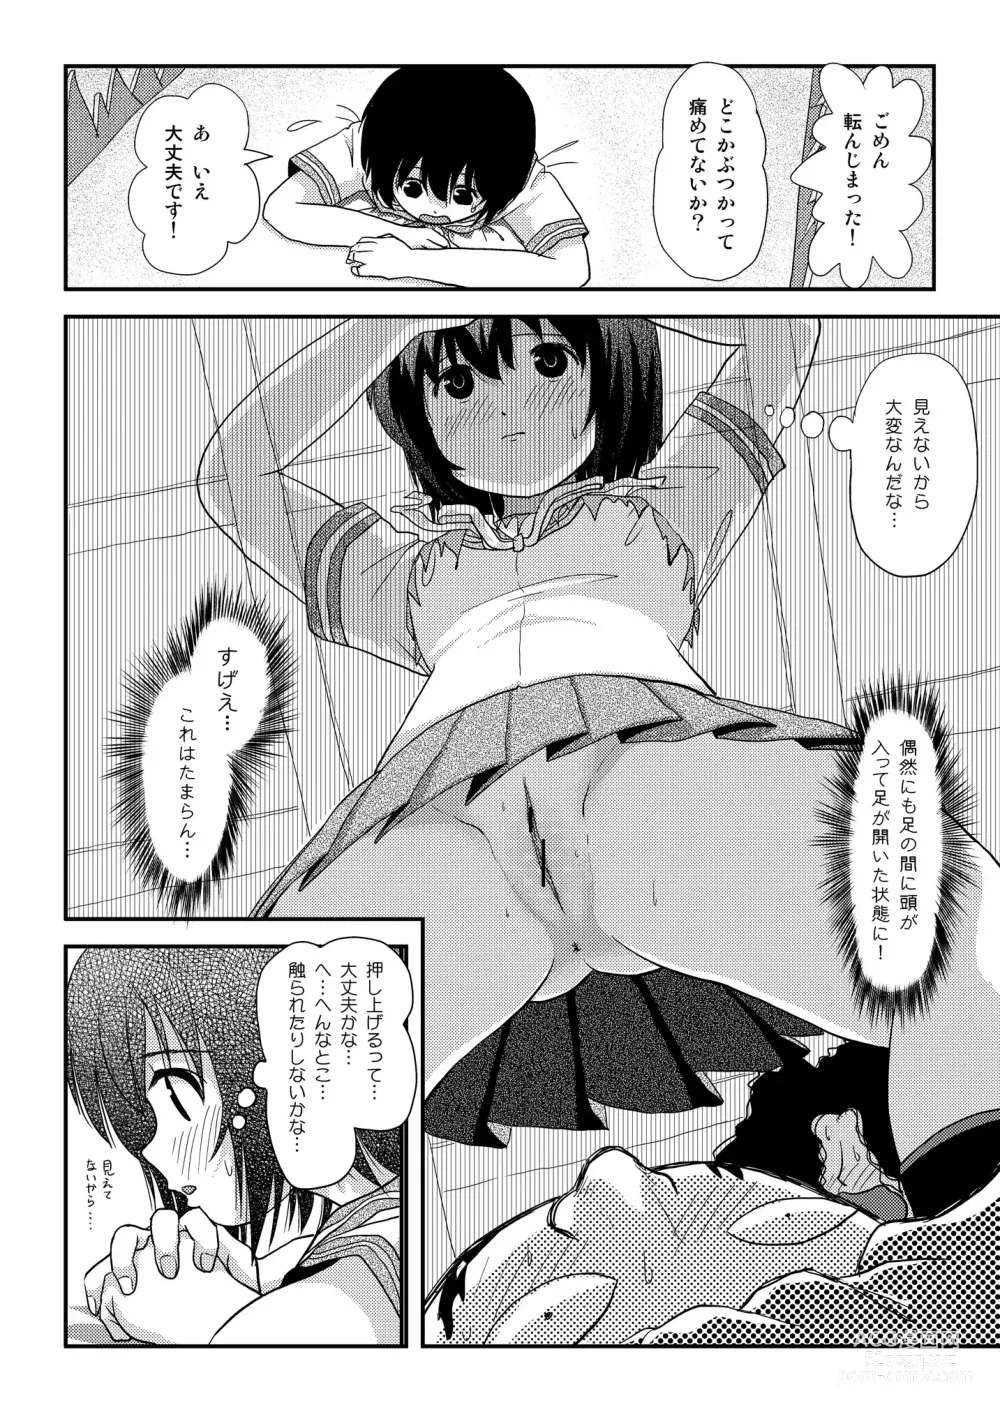 Page 28 of doujinshi Chiru Roshutsu 18